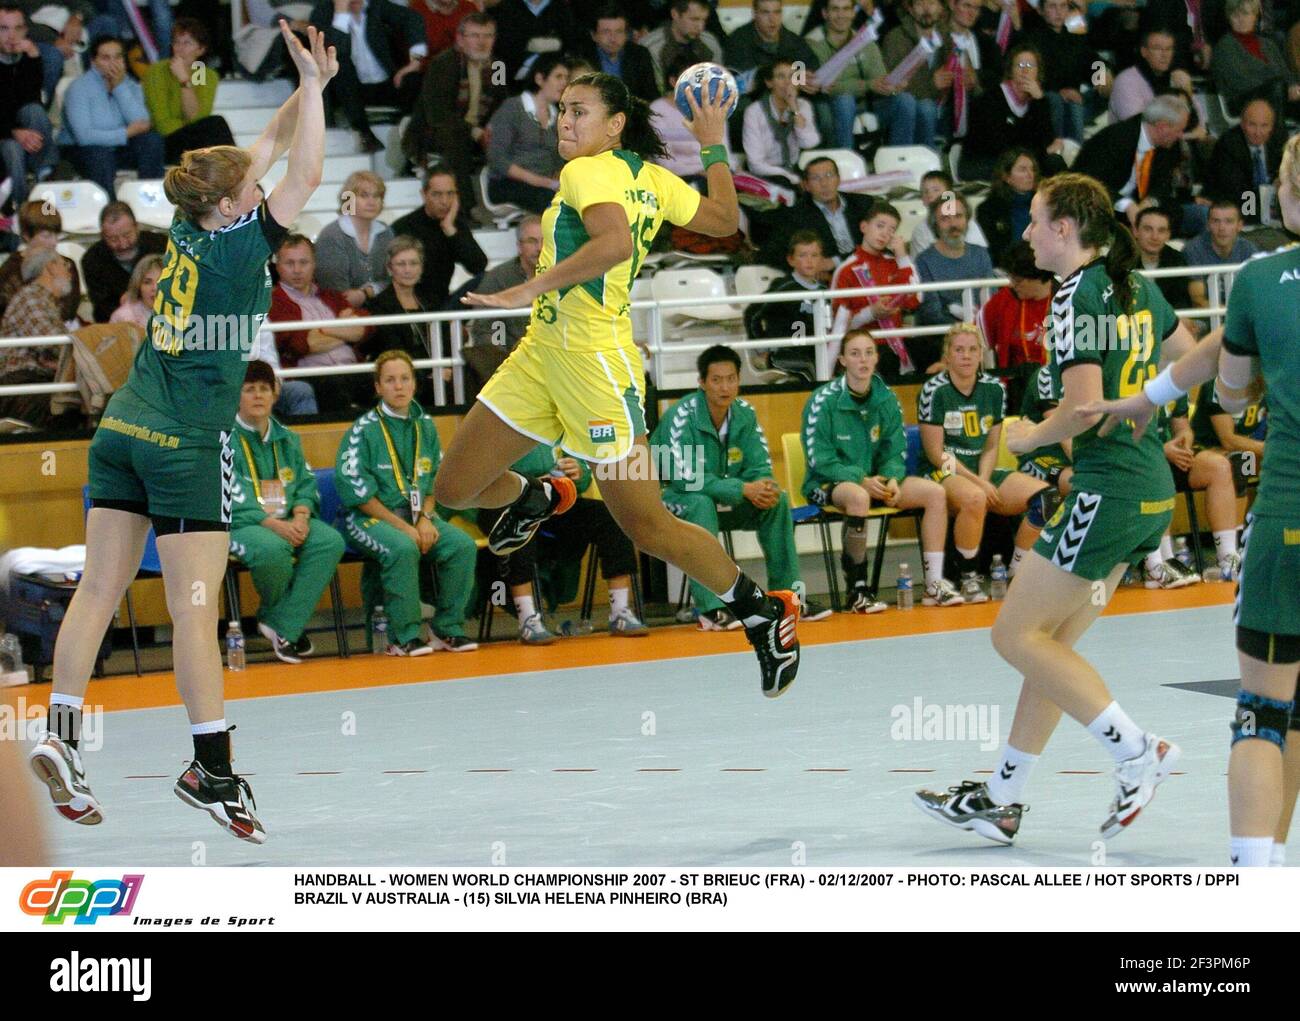 HANDBALL - WOMEN WORLD CHAMPIONSHIP 2007 - ST BRIEUC (FRA) - 02/12/2007 - PHOTO: PASCAL ALLEE / HOT SPORTS / DPPI BRAZIL V AUSTRALIA - (15) SILVIA HELENA PINHEIRO (BRA) Stock Photo